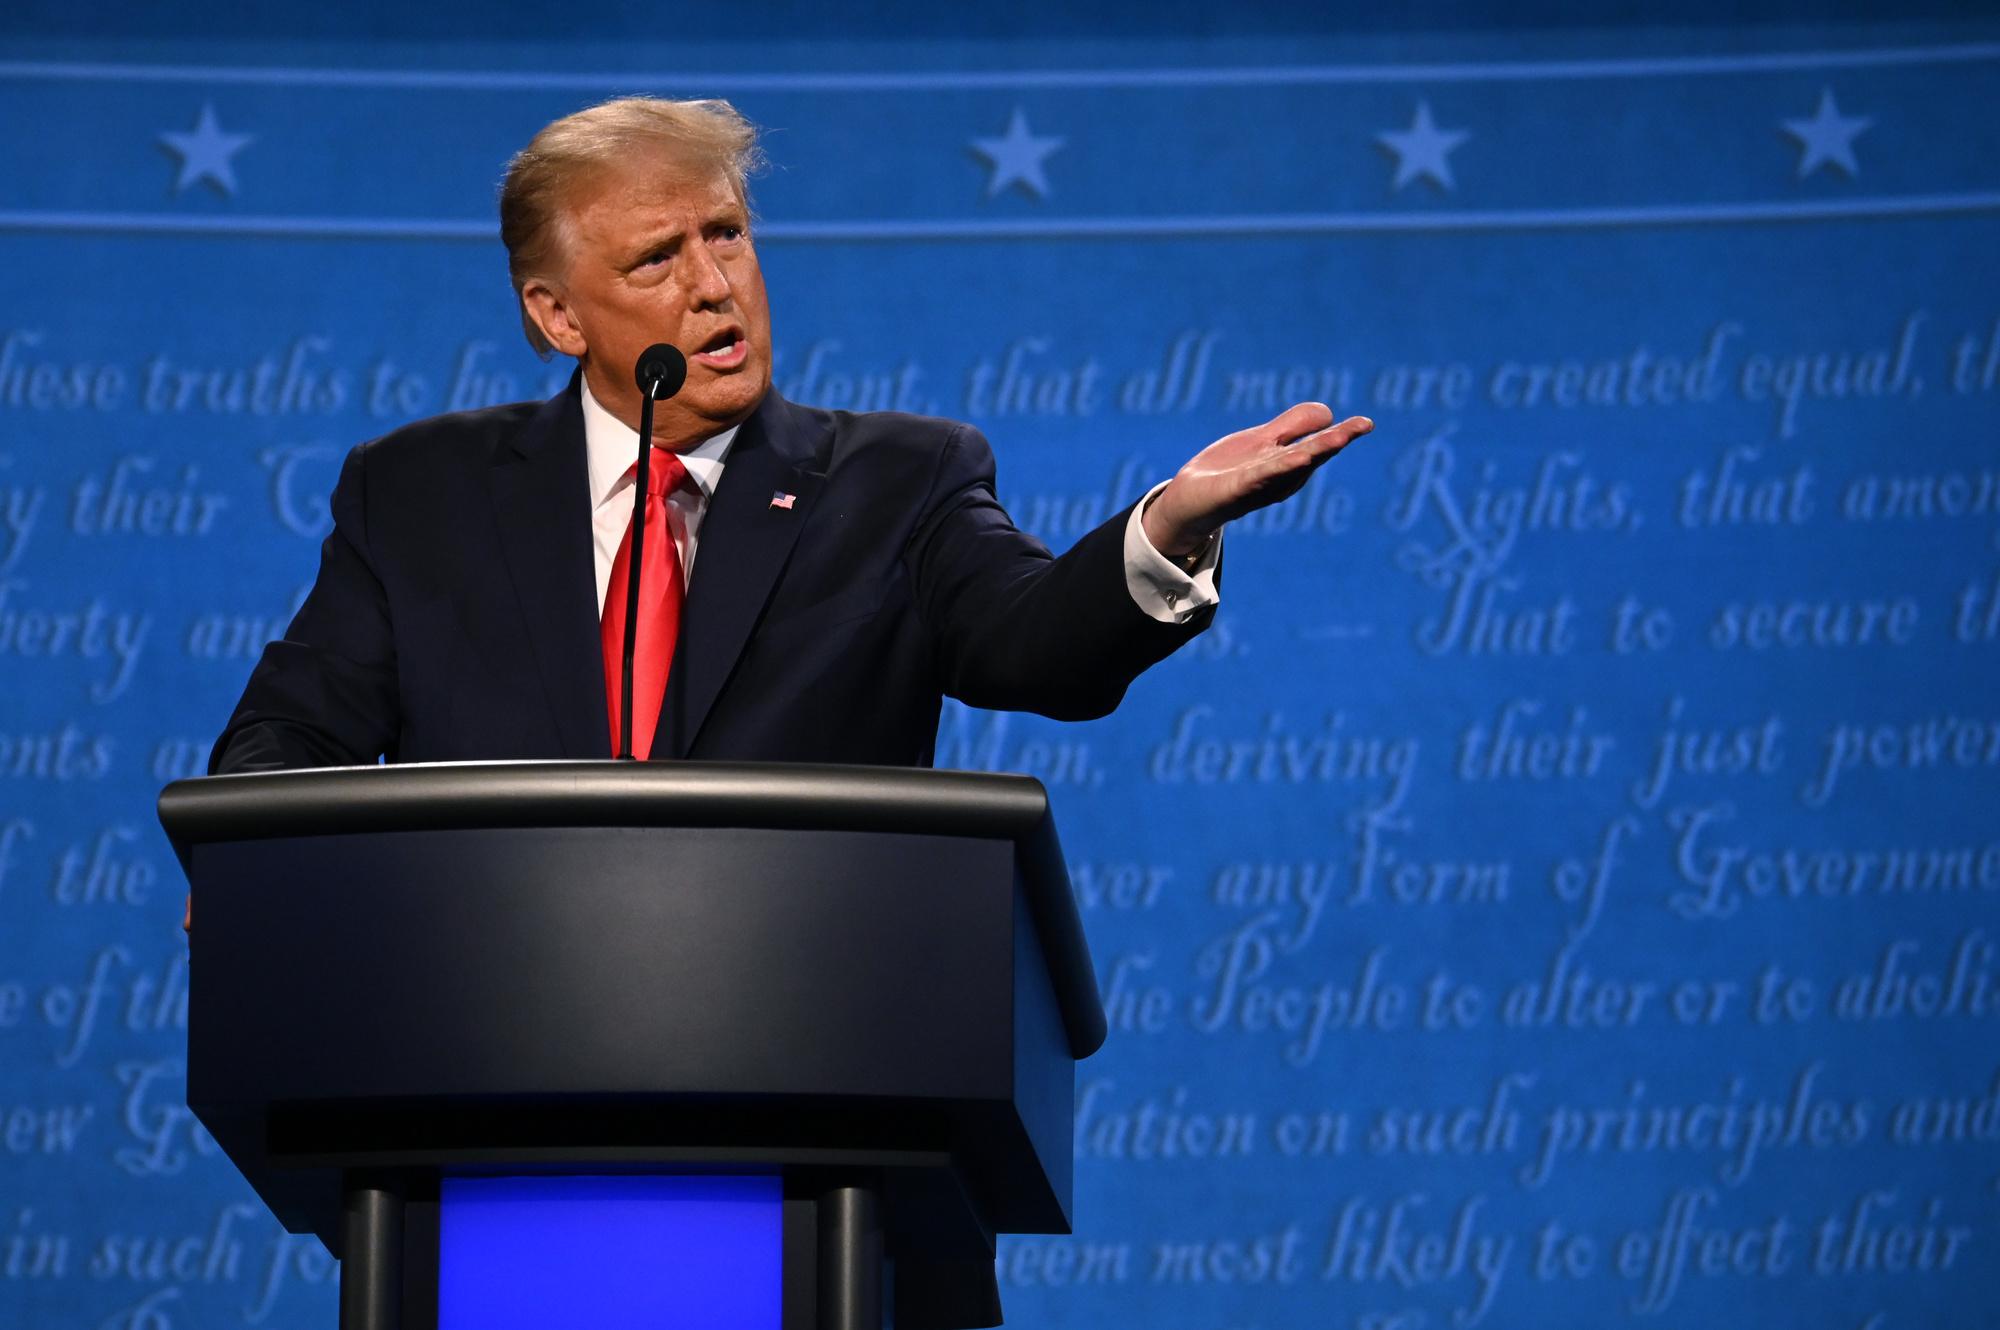 Elections USA: Trump domine le dernier débat, mais ne déstabilise pas Biden (analyse)